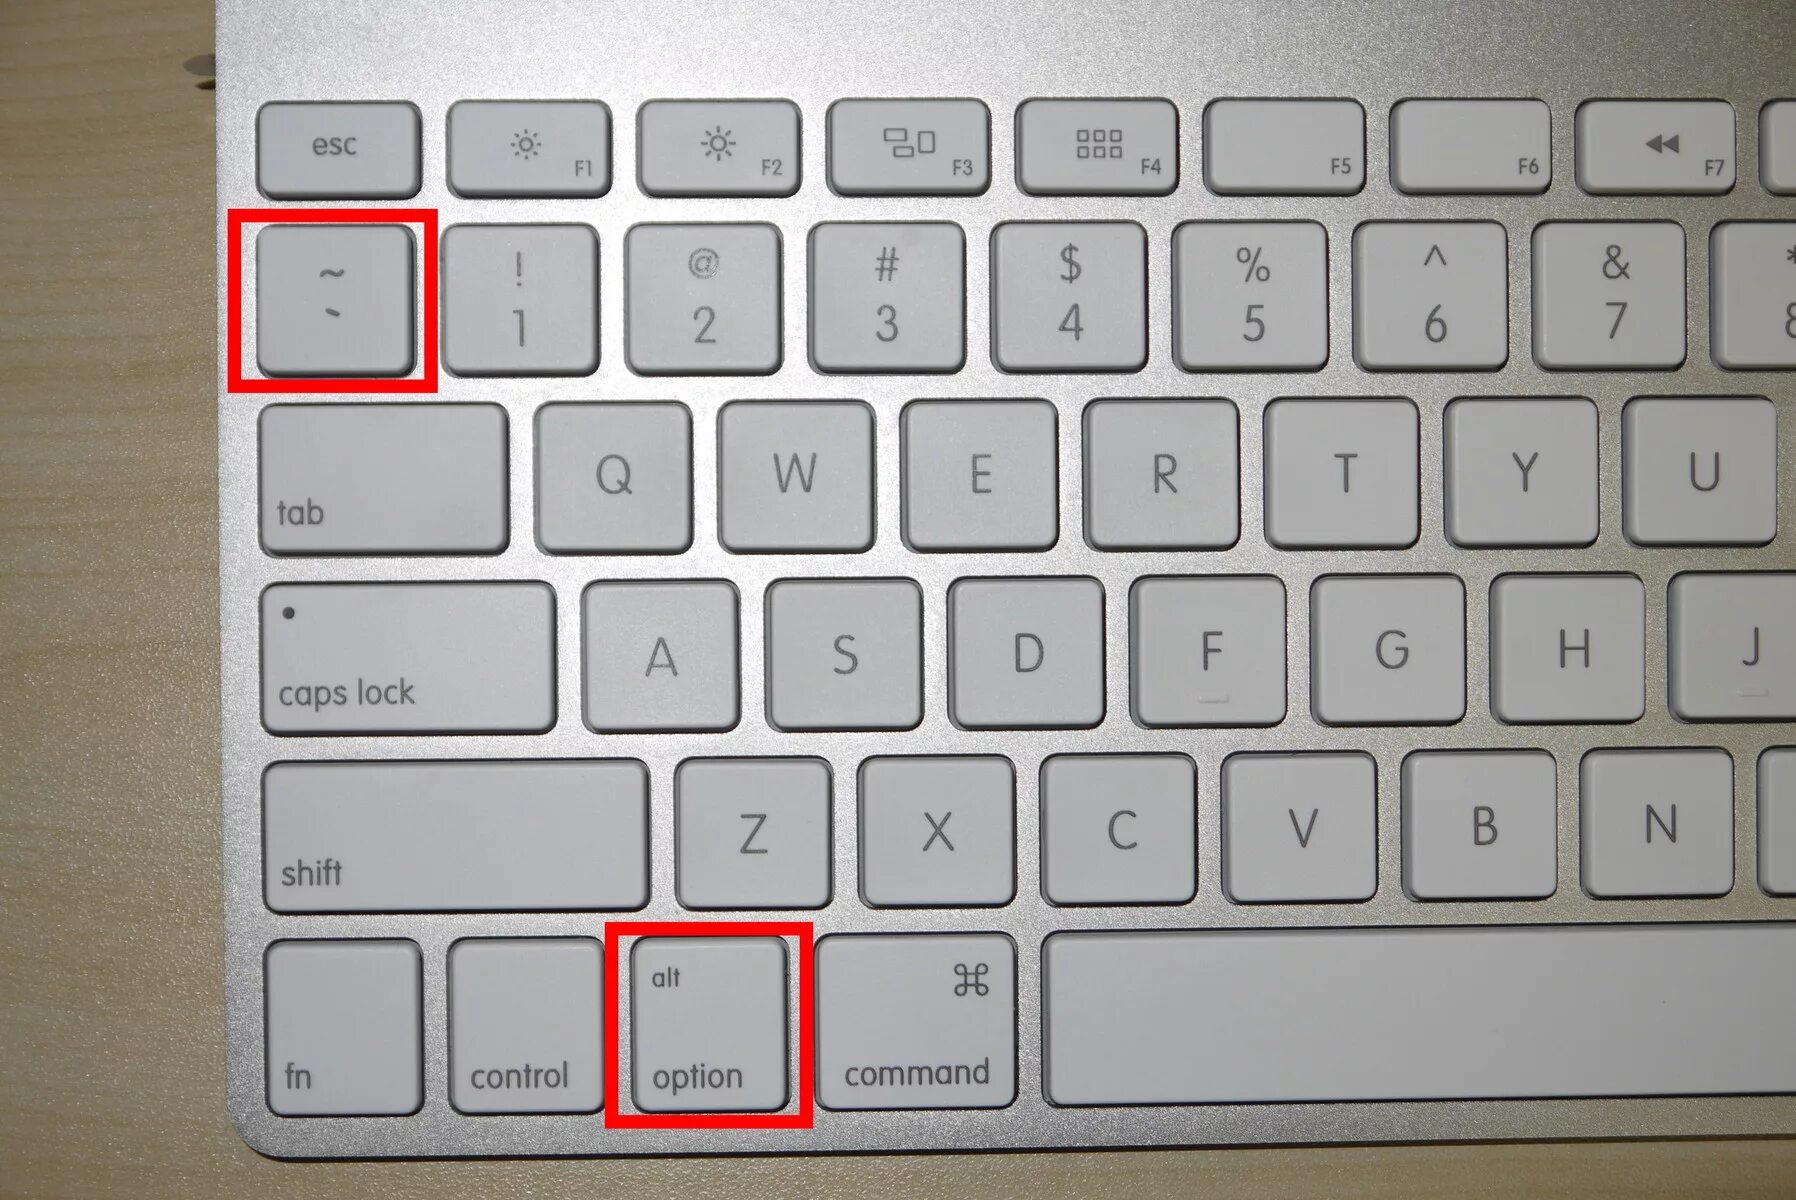 Control клавиша. Del на клавиатуре Apple. Кнопка del на клавиатуре Mac. Кнопка del на клавиатуре Apple. Кнопка шифт на клавиатуре.